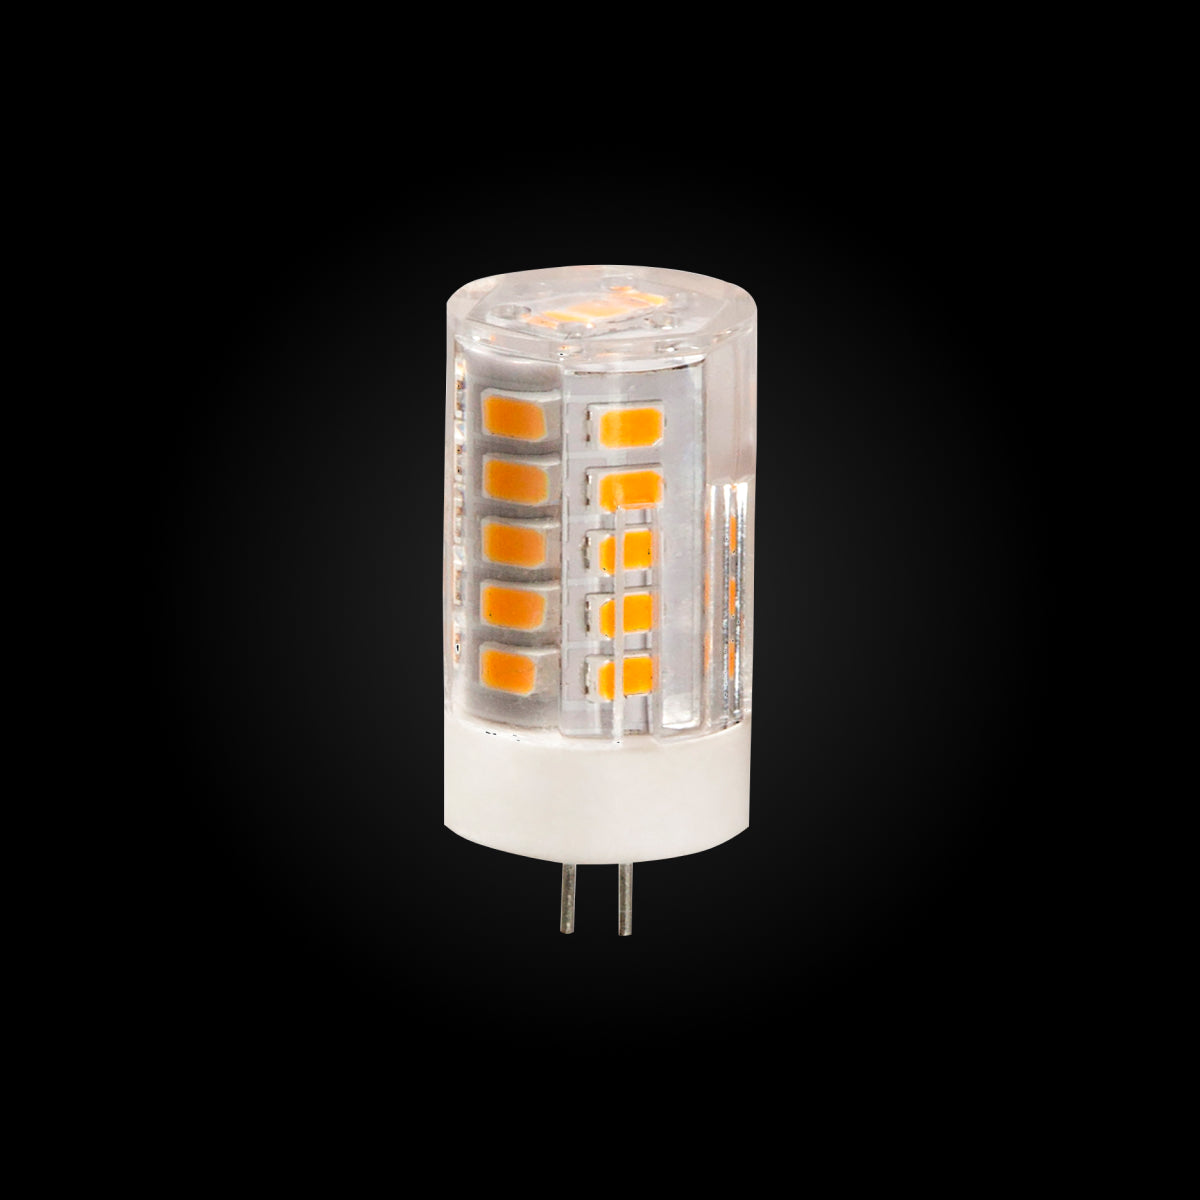 Ambassade trog Negende G4 3w 2700k LED Lamp | The Hardscape Exchange